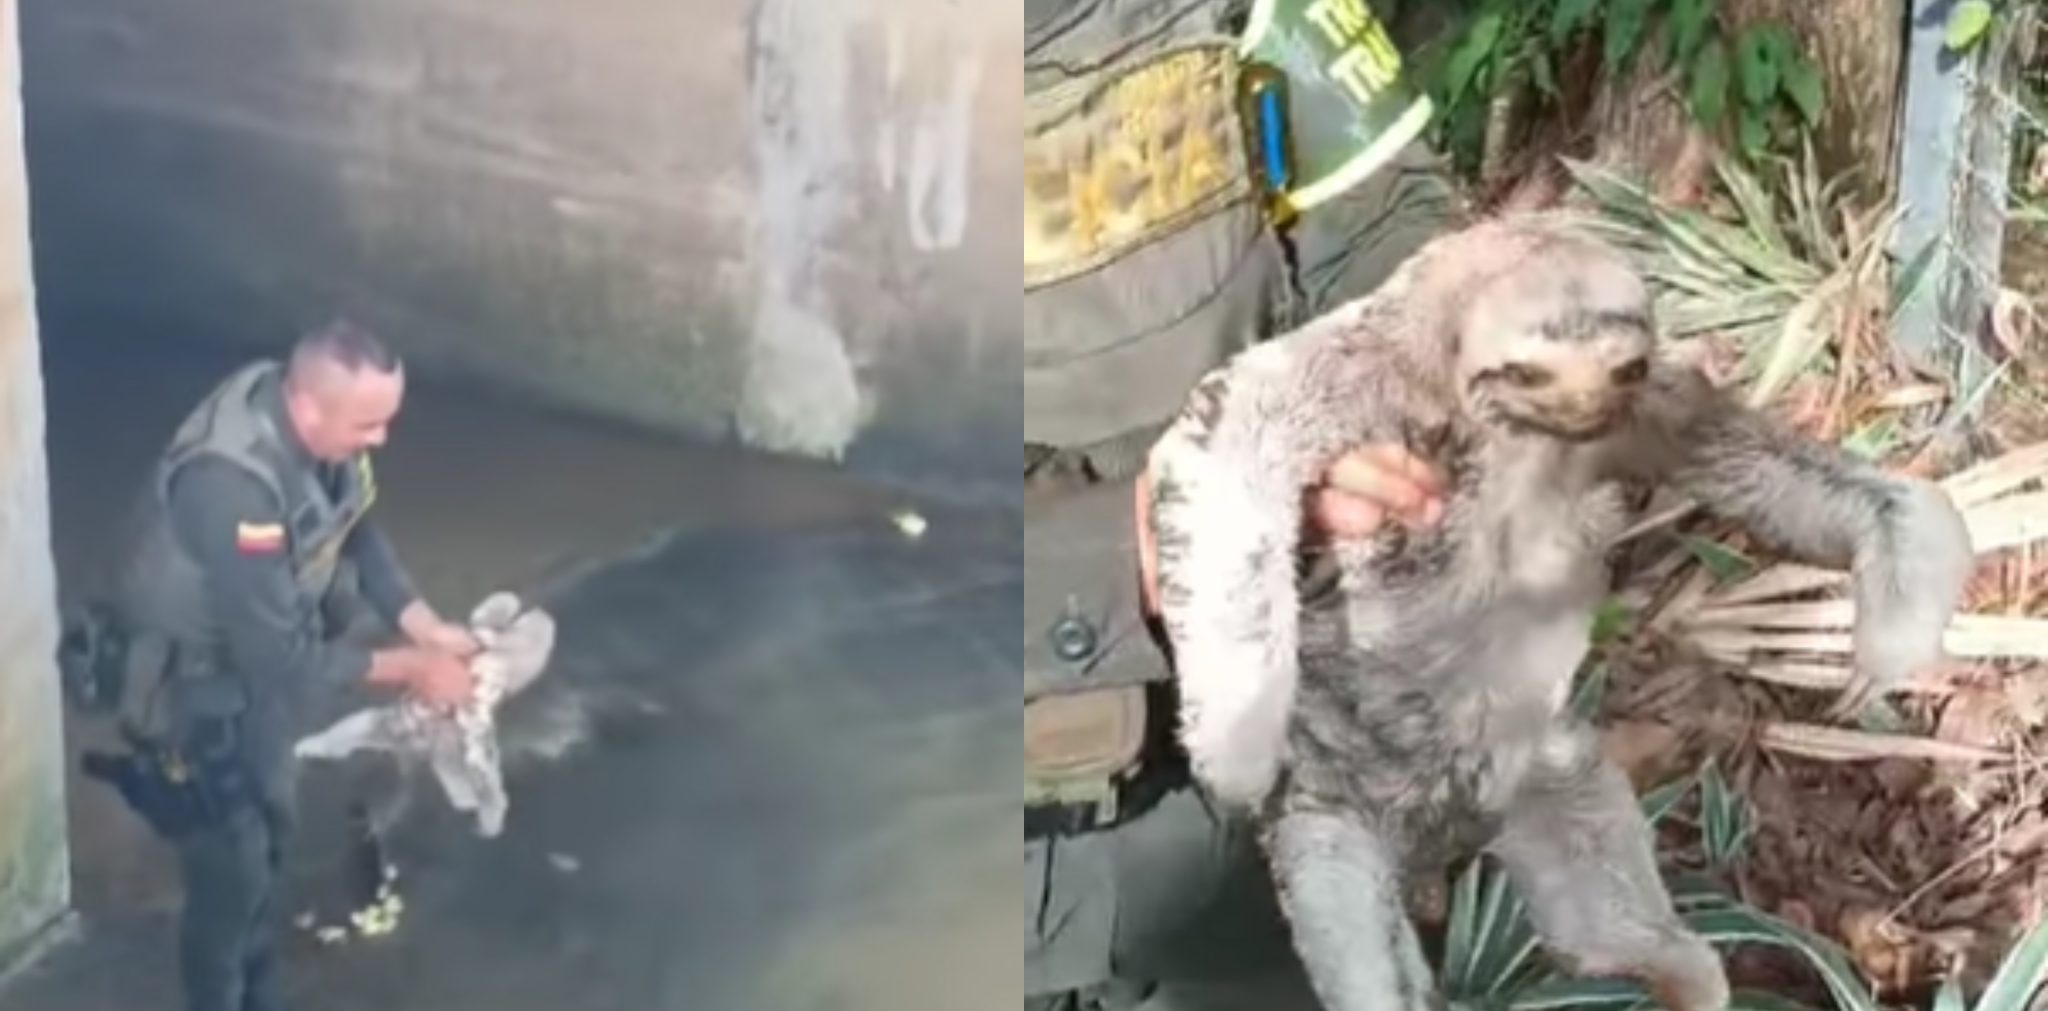 [Video] Policía salva a oso perezoso que estaba atrapado en un canal de agua